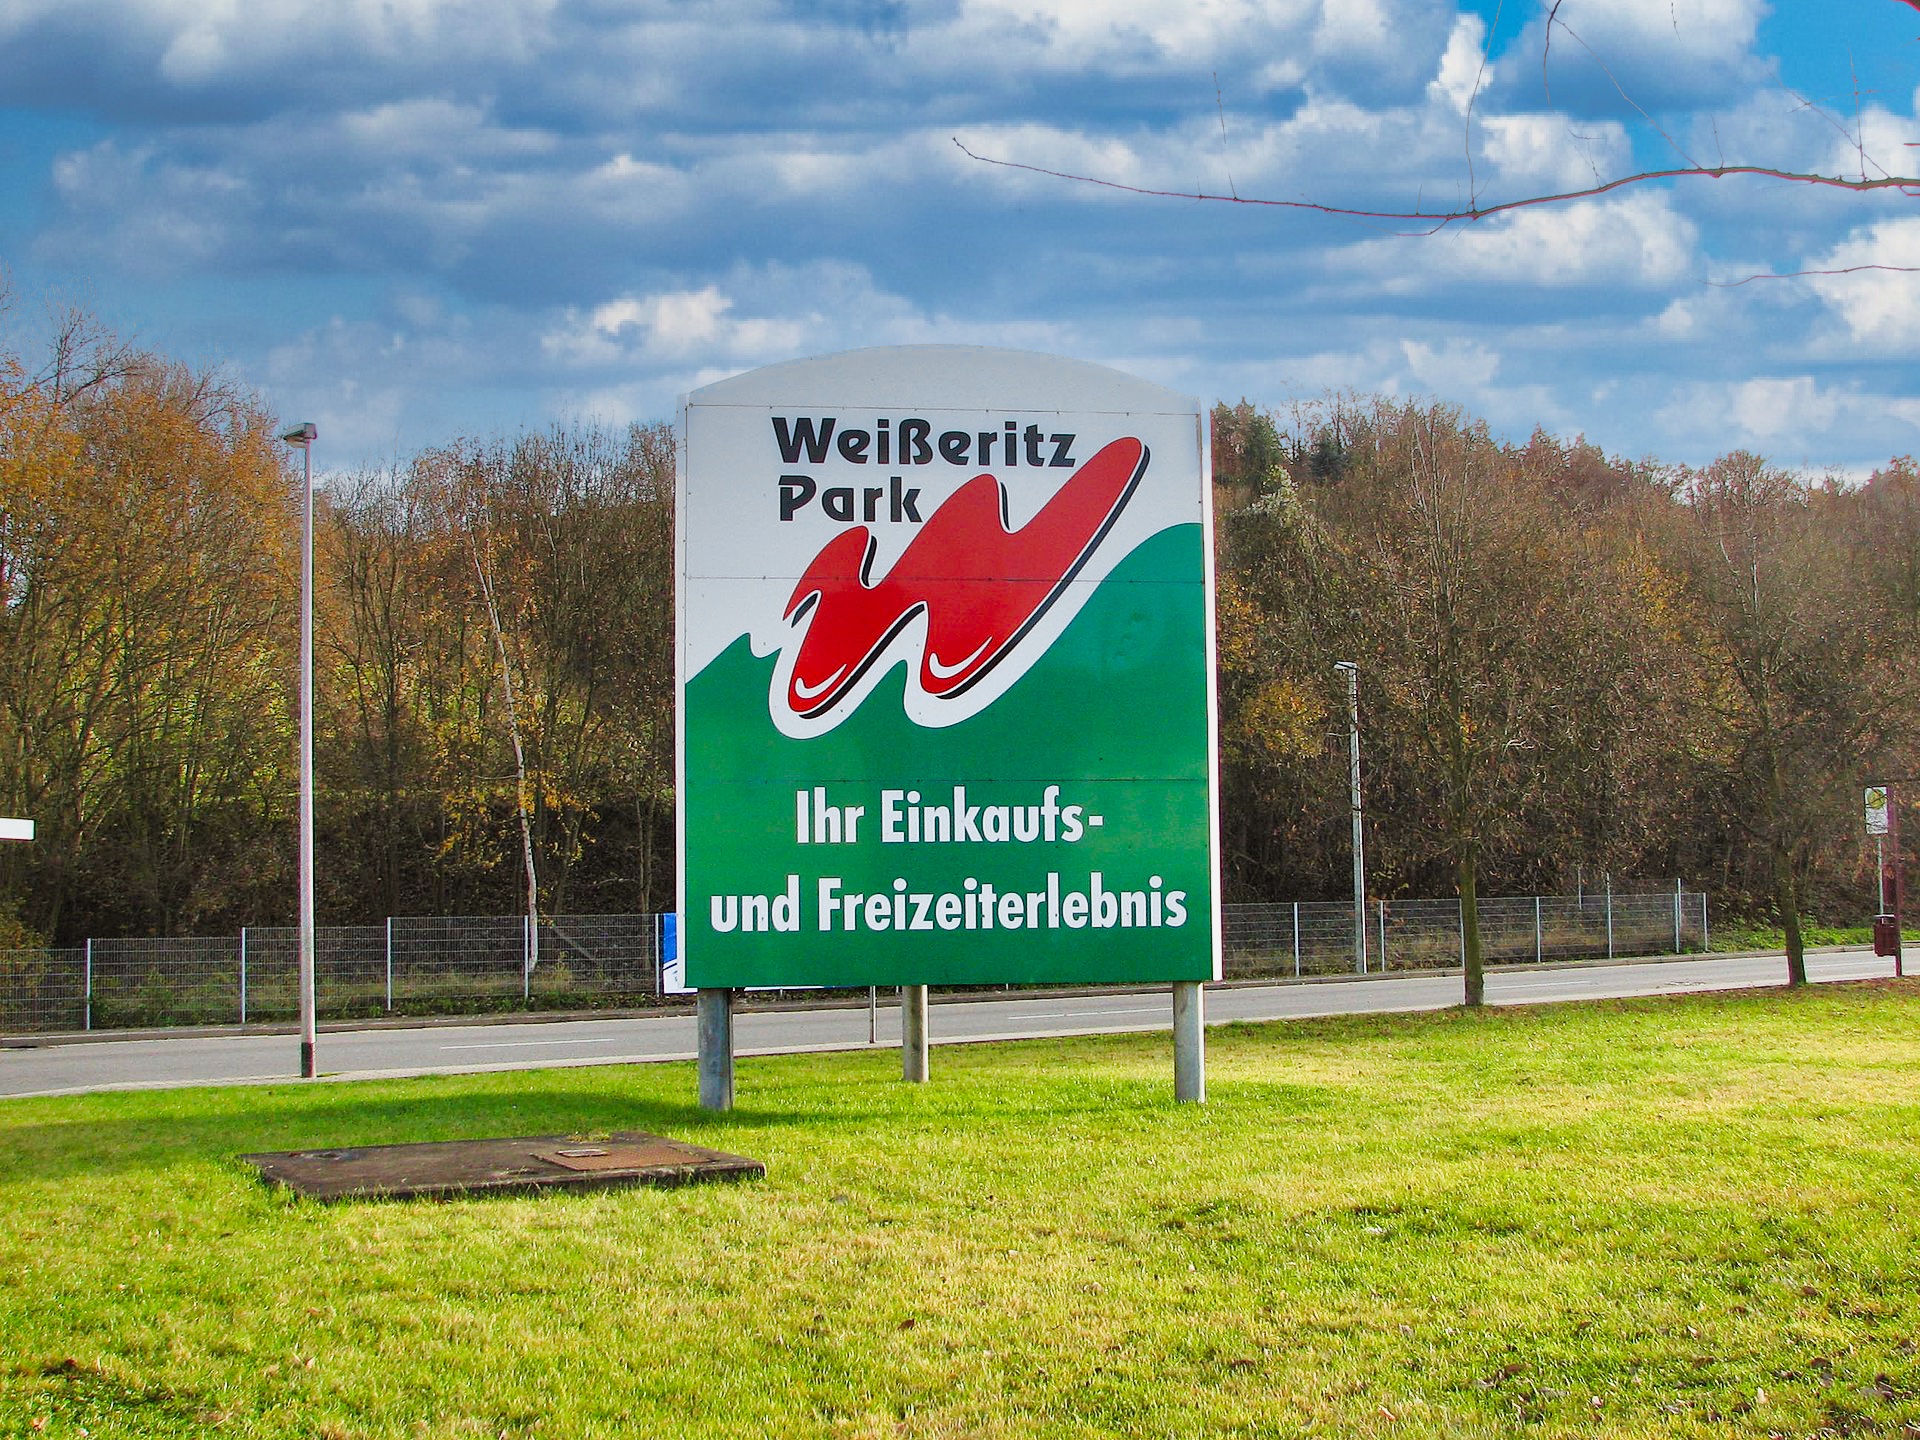 Werbeschild des Weißeritz-Parks Bild: Inkowik32 CC BY-SA 3.0